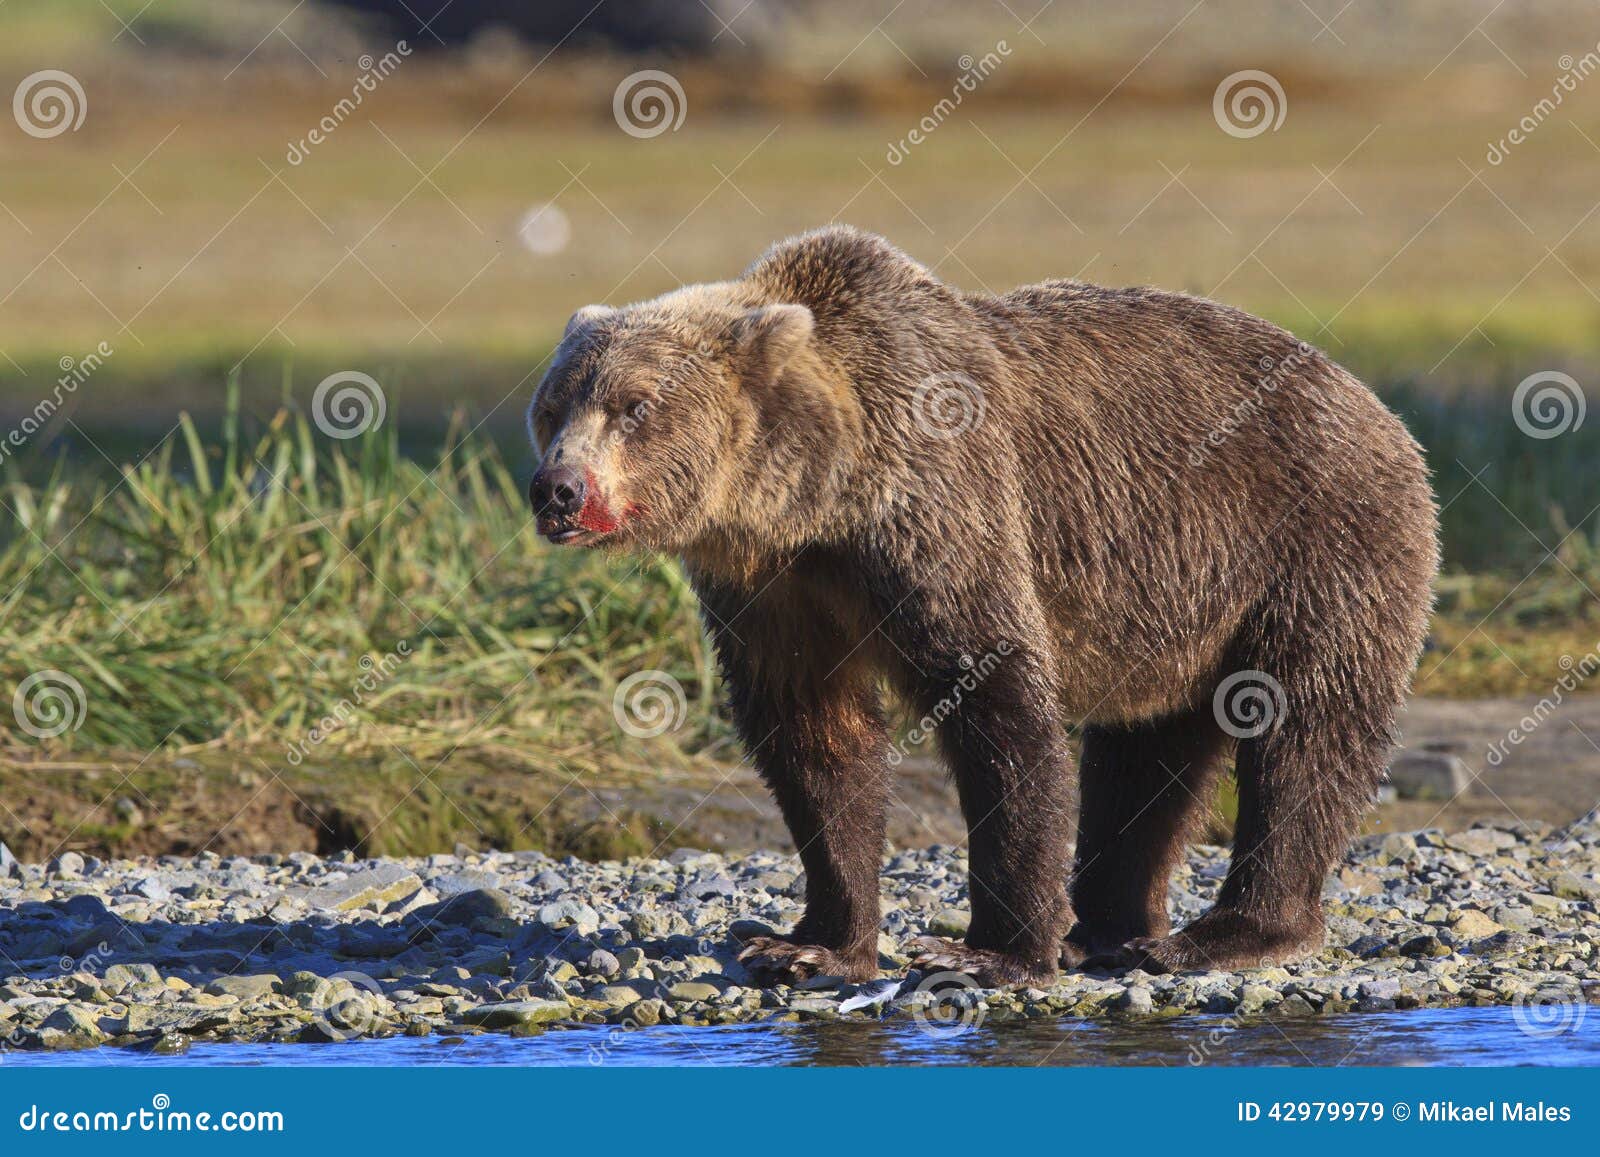 Verraco del oso de Brown con el hocico sangriento. Hocico sangriento en el oso de Brown